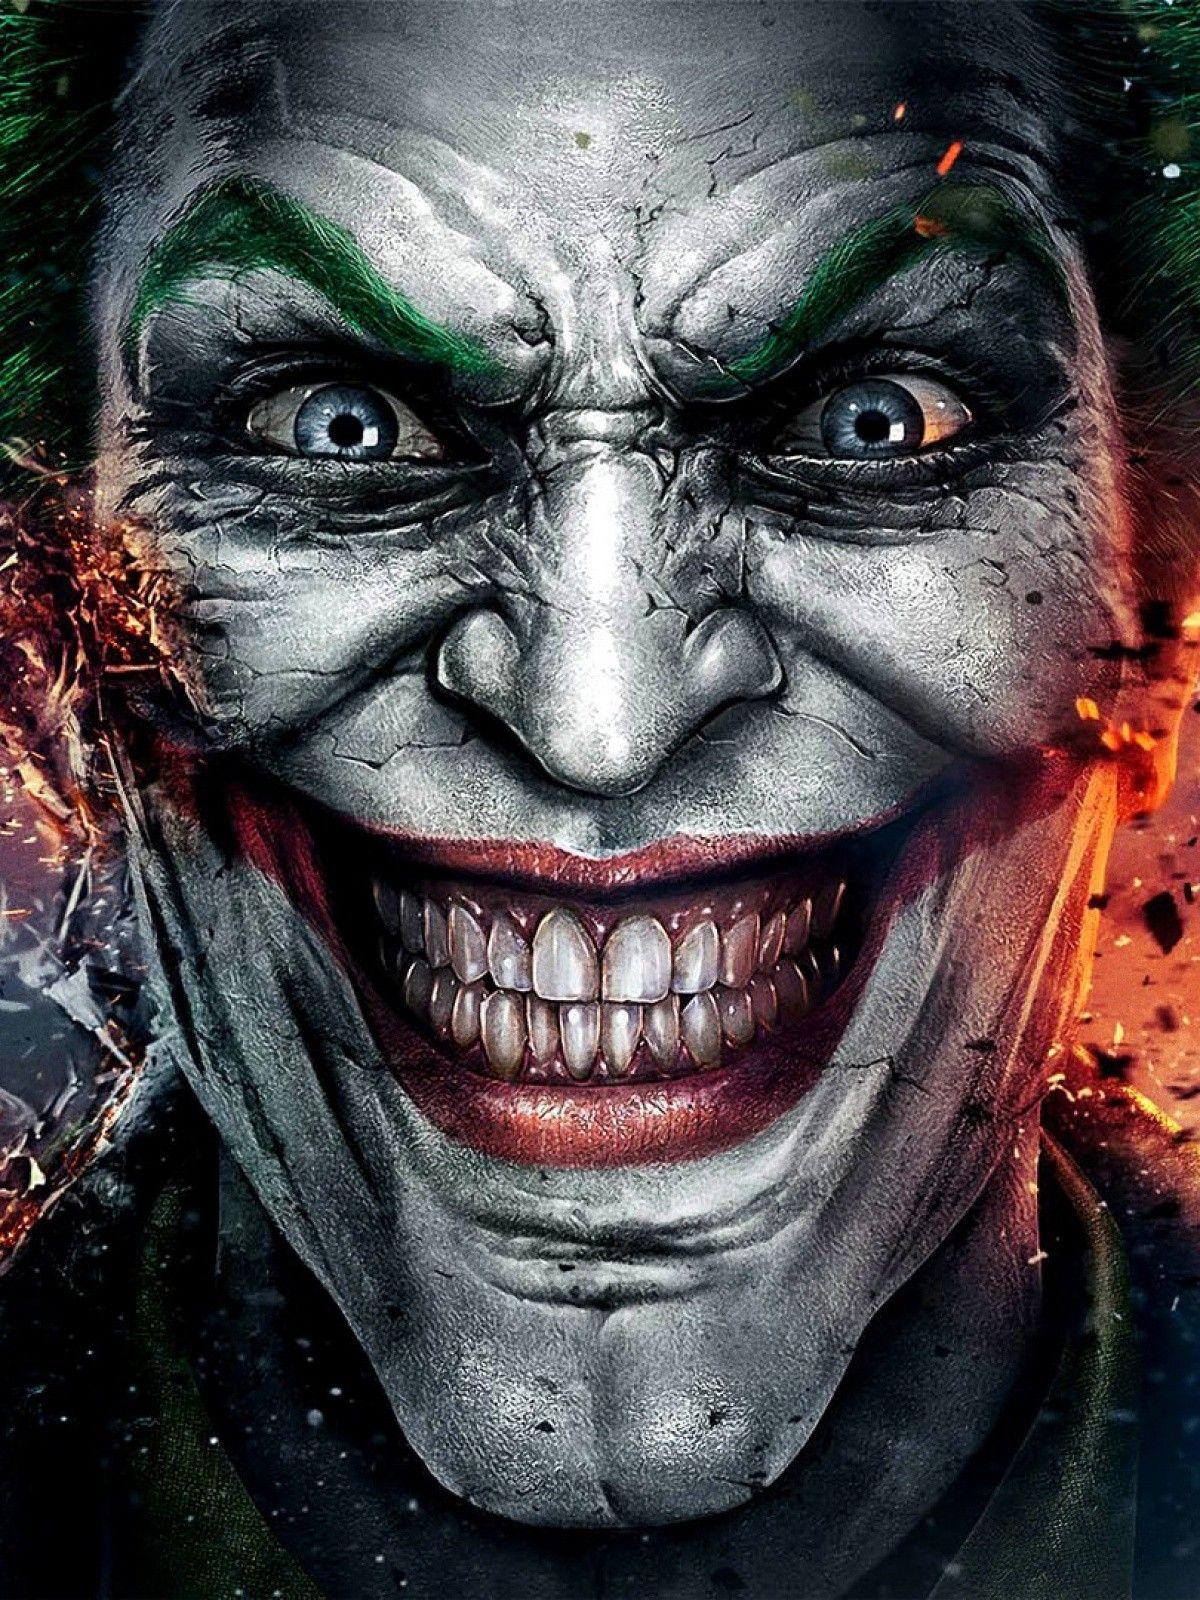 Download Gambar Wallpapers Hd Android Joker terbaru 2020